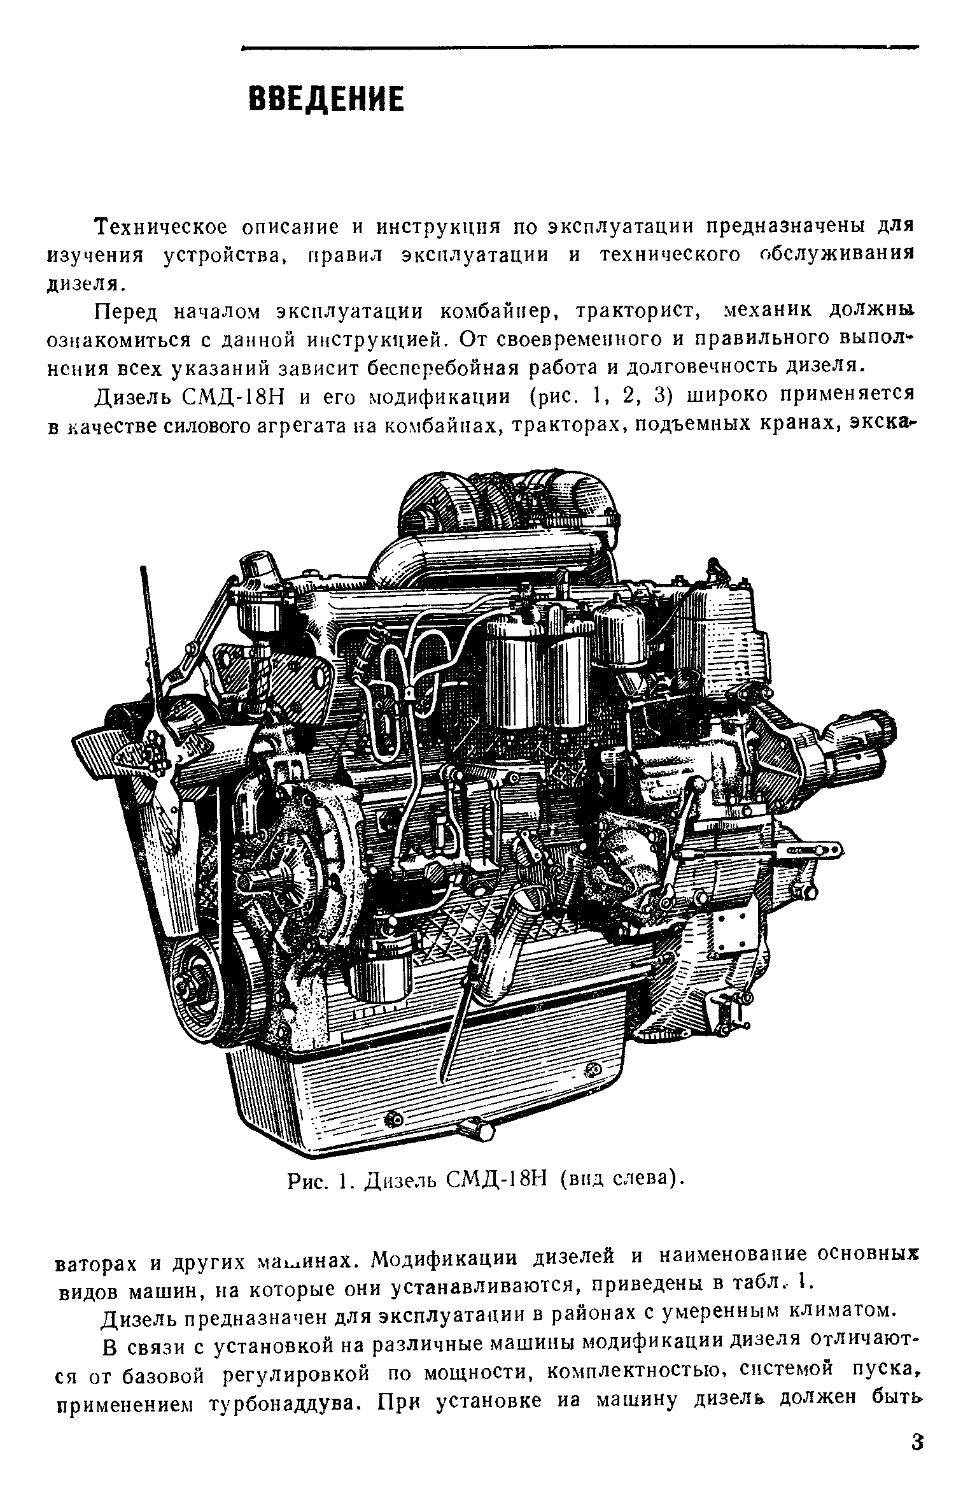 Двигатели смд-14,15,17,18, 22, 23, 31